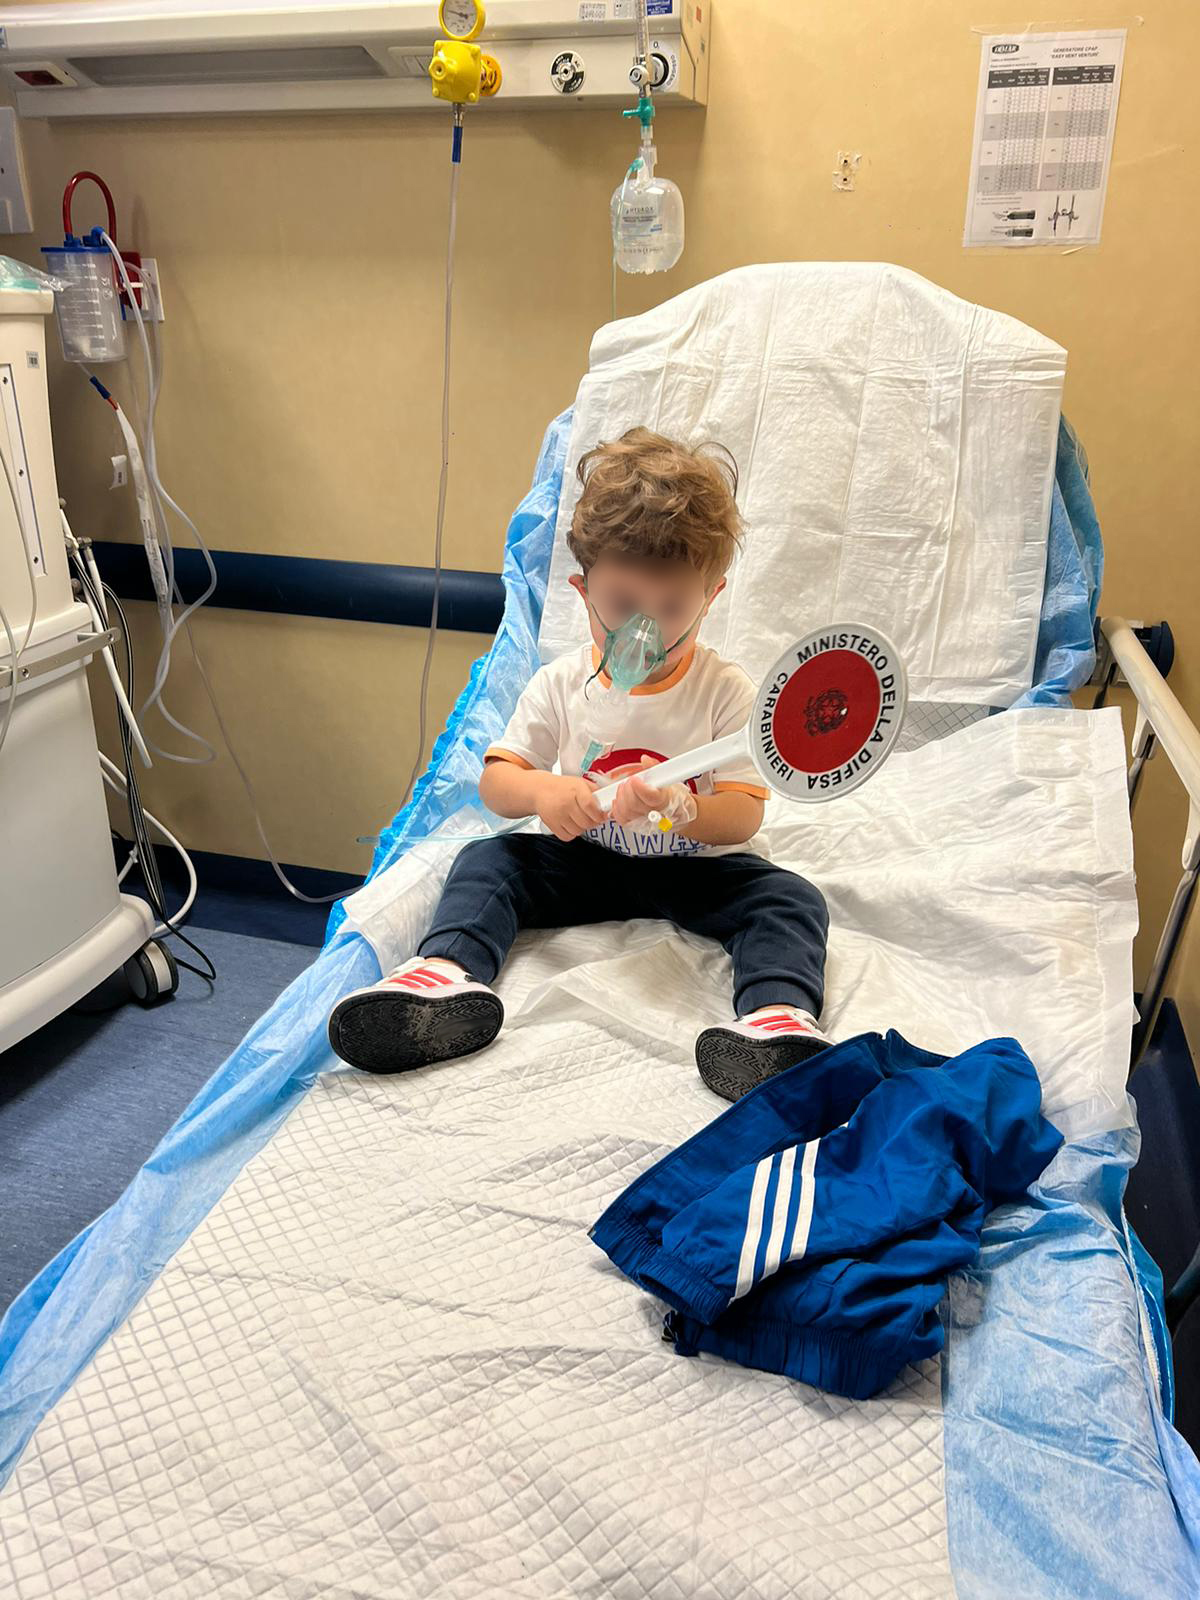 Bimbo di 2 anni in shock anafilattico: corsa disperata in ospedale in auto con i carabinieri